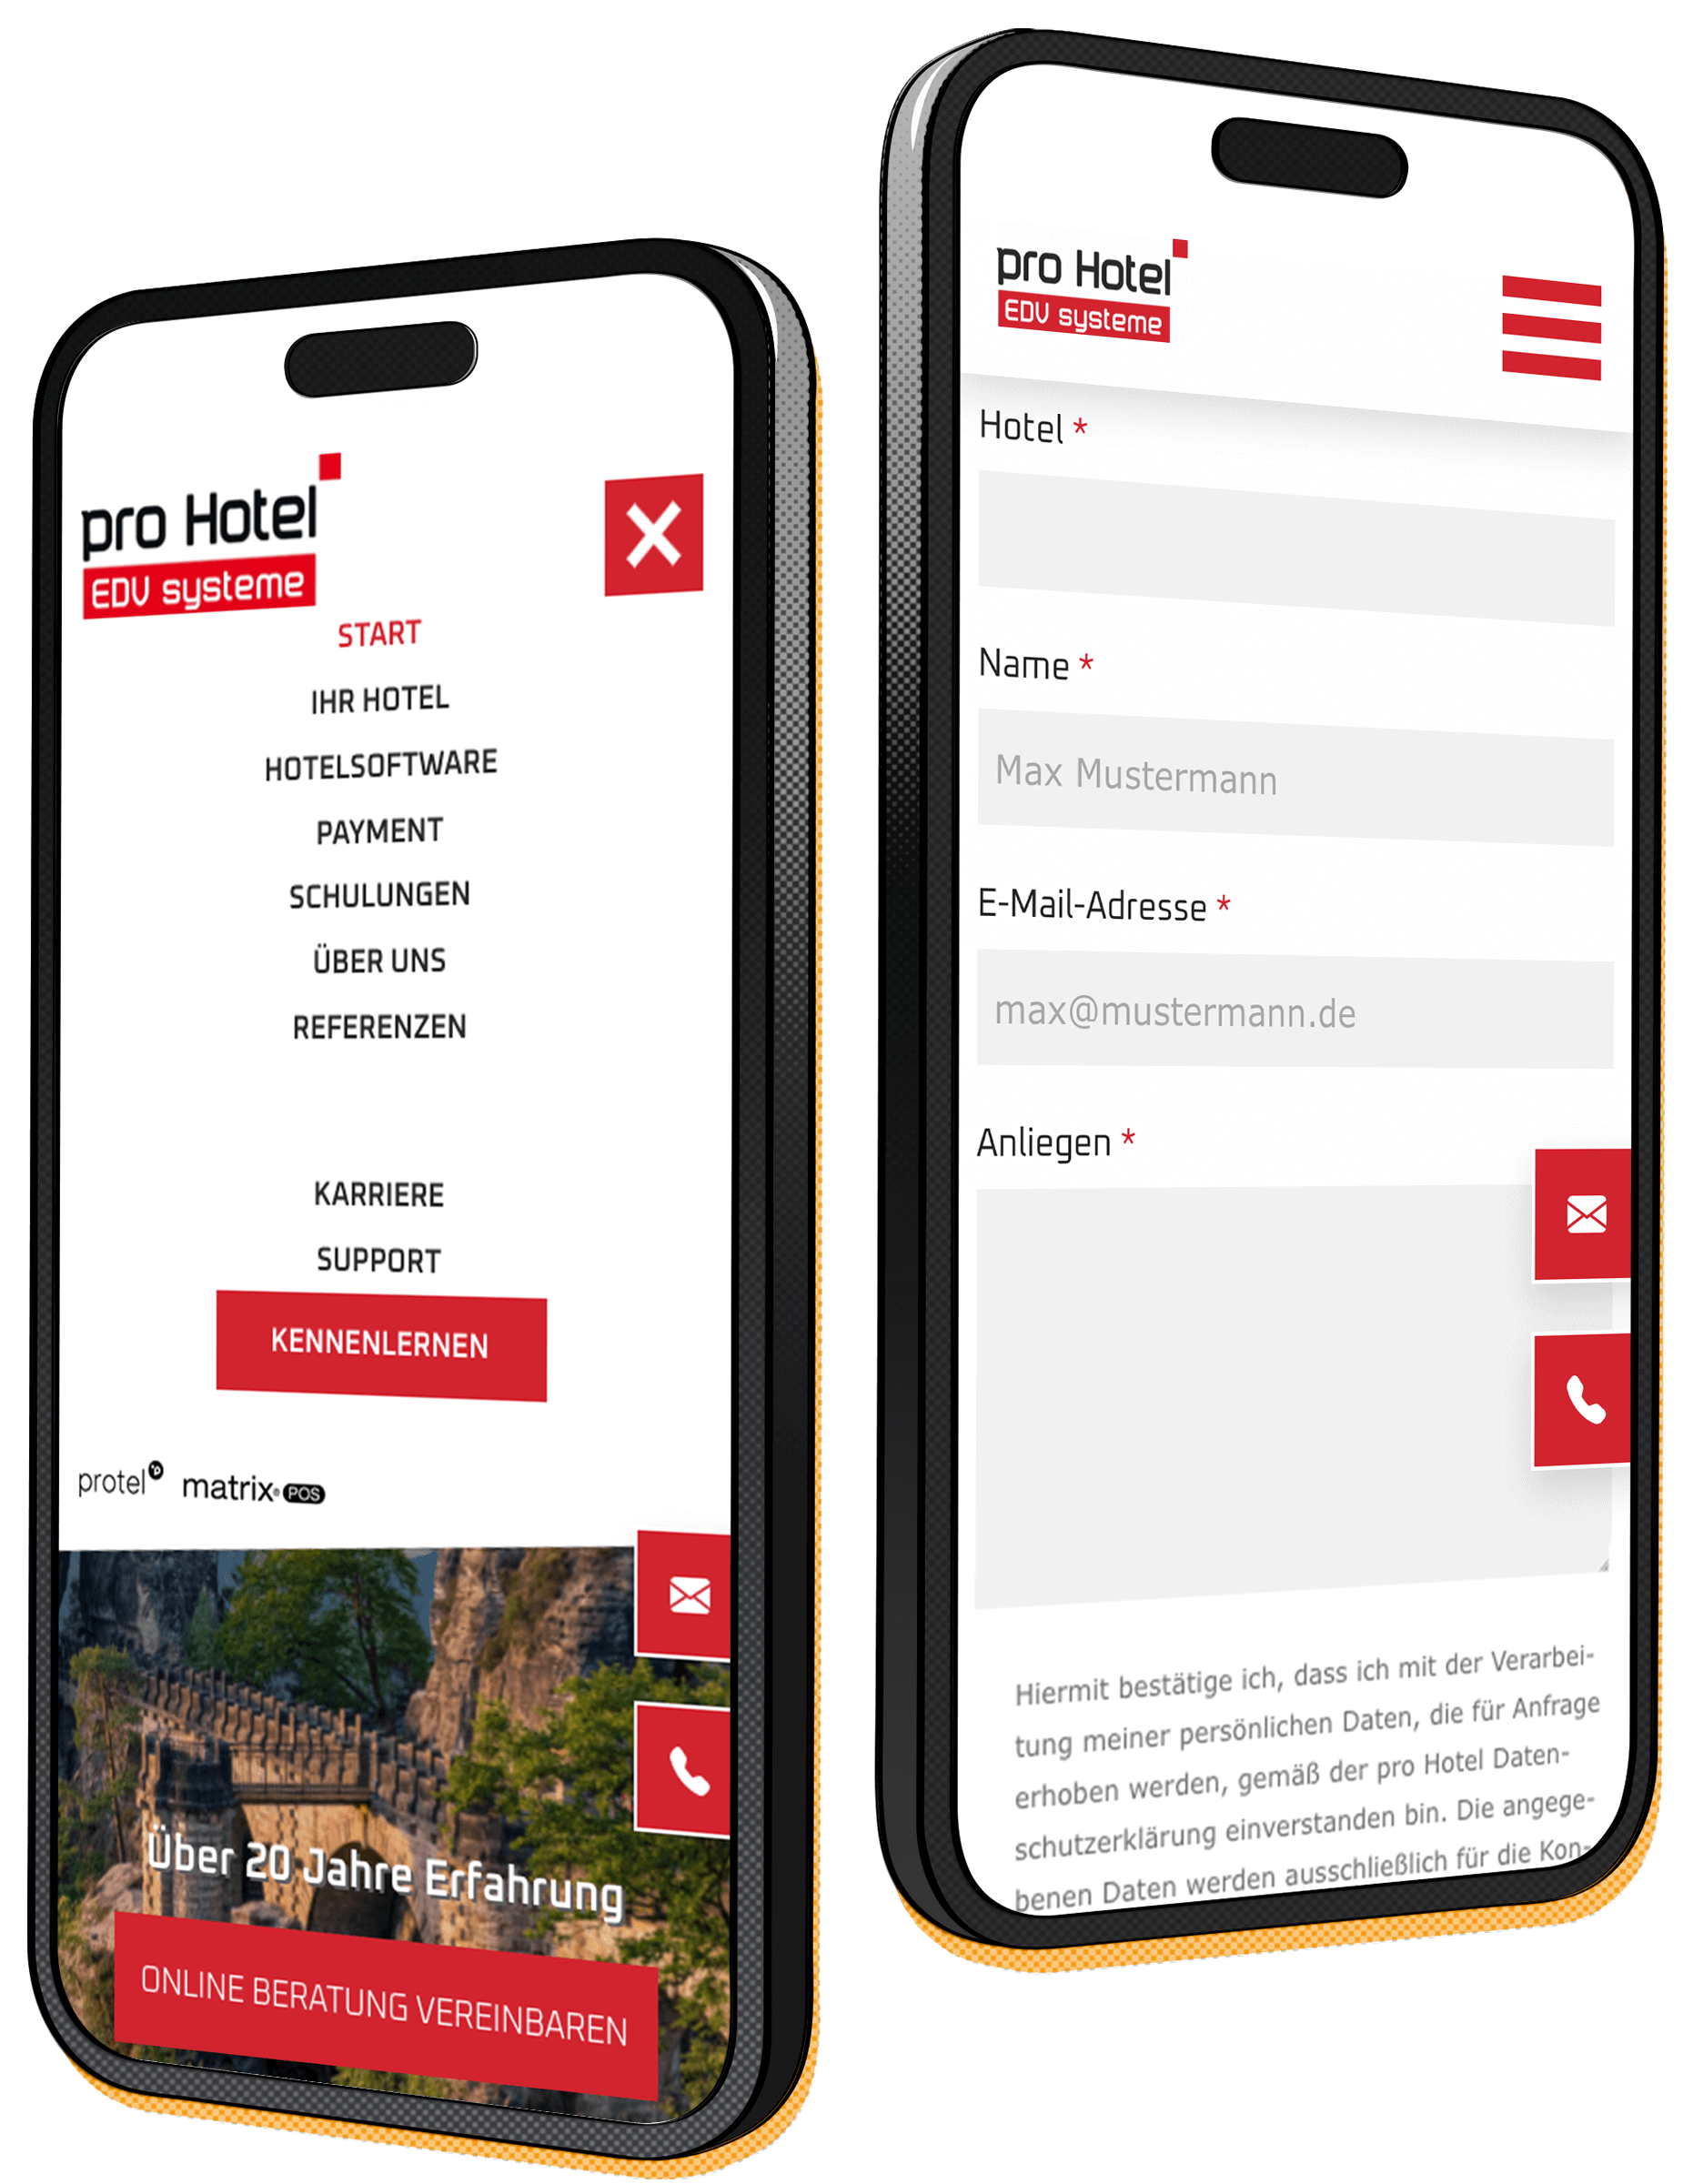 neue pro Hotel Website optimiert für mobil made by Feuerpanda Werbeagentur Dresden